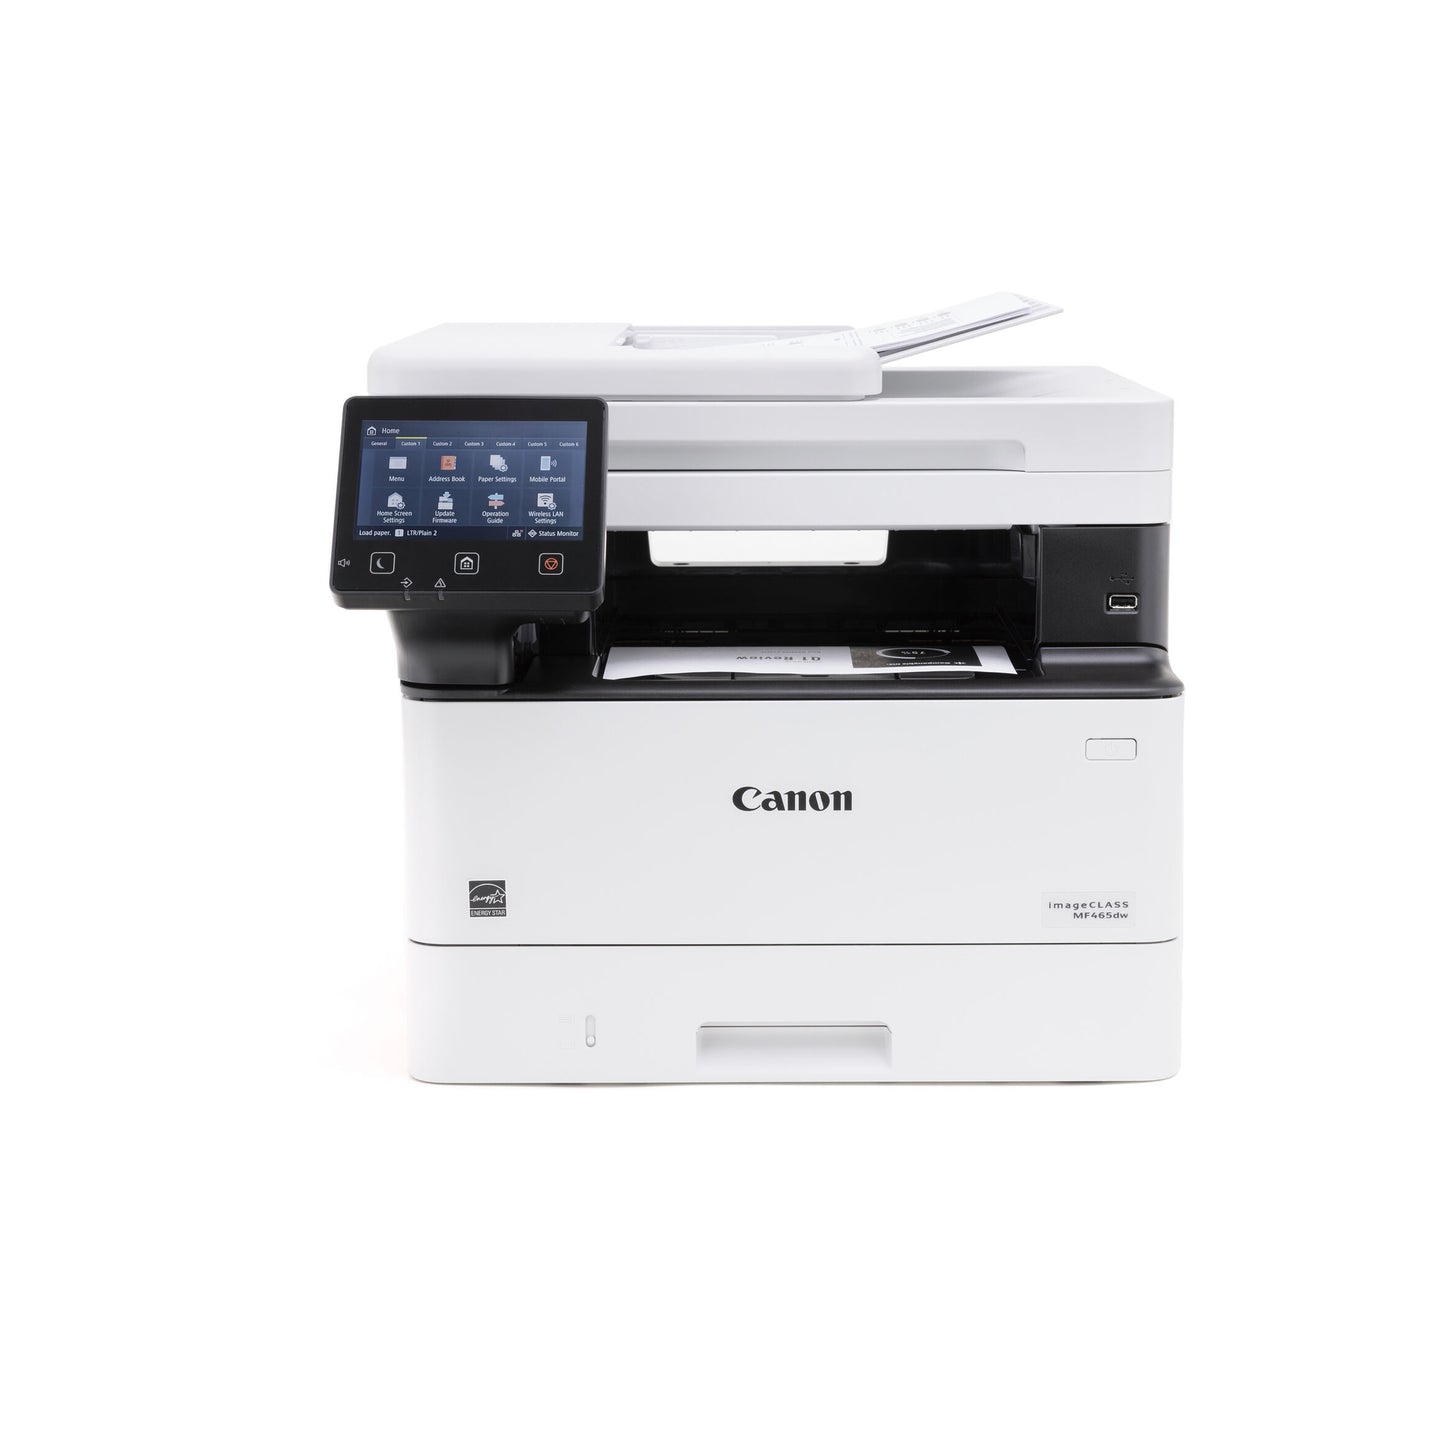 Canon® imageCLASS® MF455dw Wireless Laser All-In-One Monochrome Printer